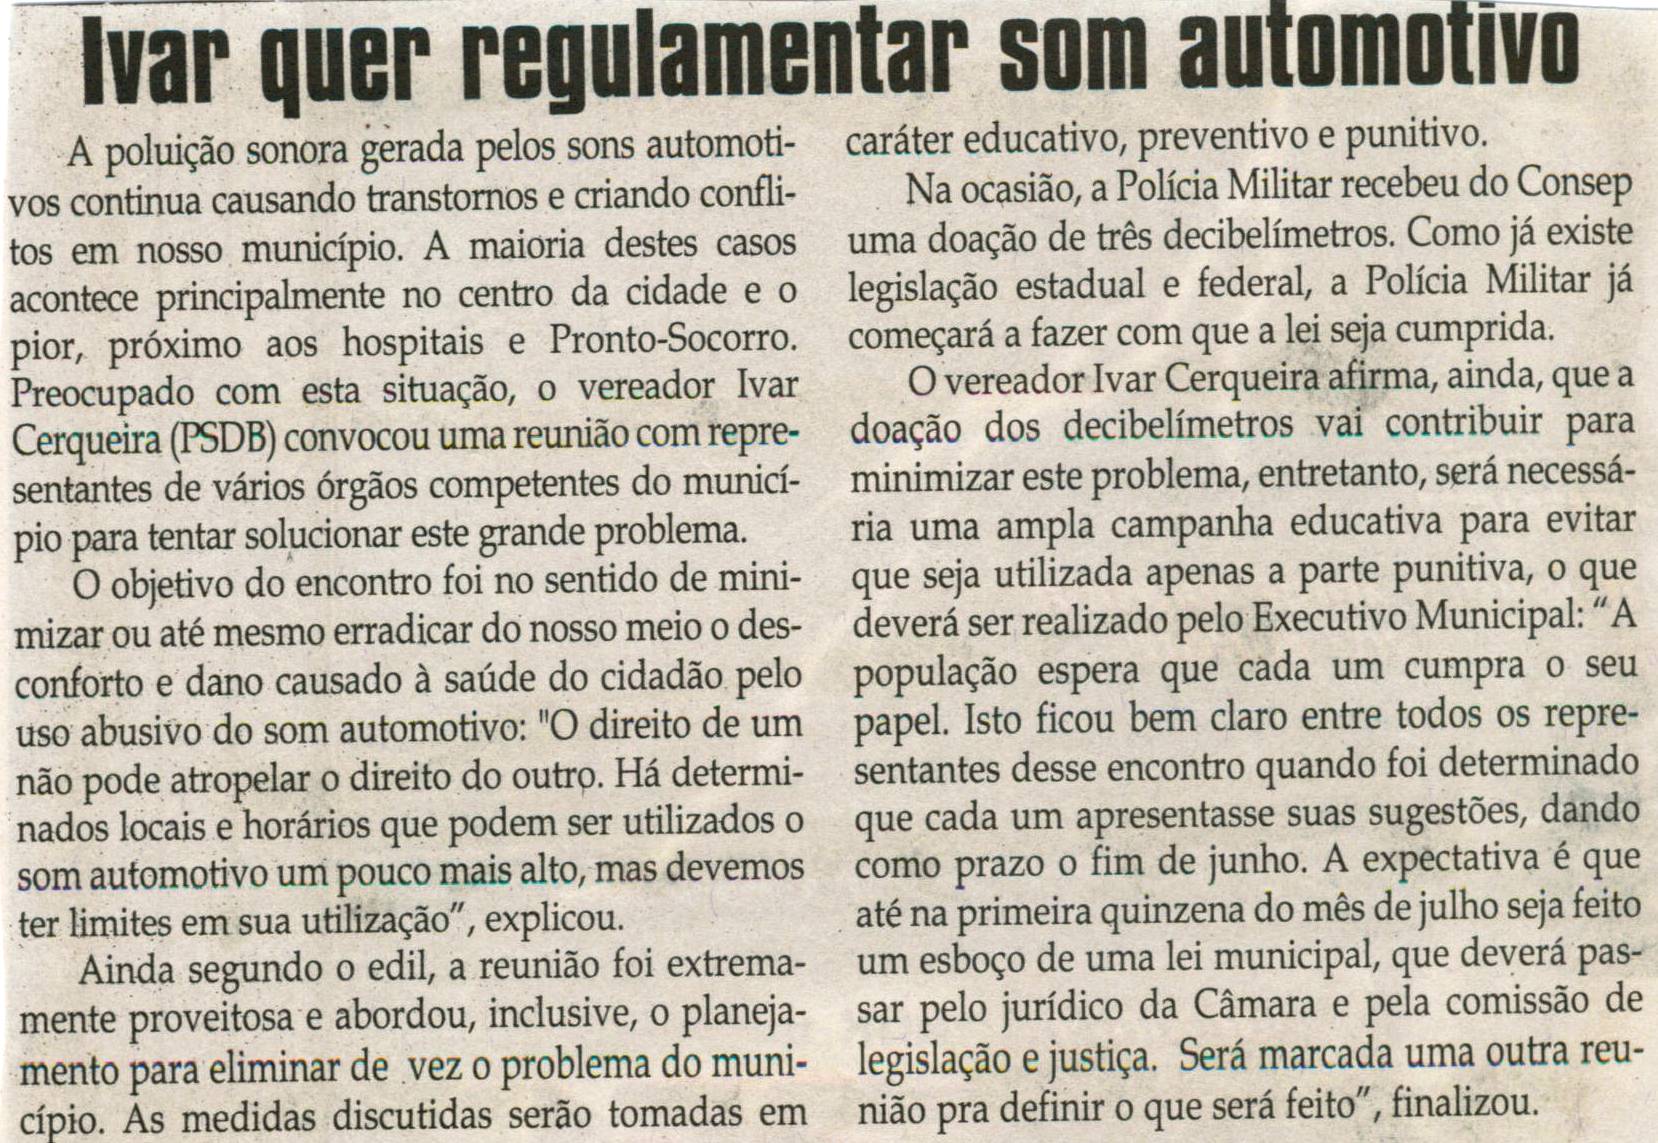 Ivar quer regulamentar som automotivo. Jornal Correio da Cidade, Conselheiro Lafaiete,  27 jun. 2009, p. 04.